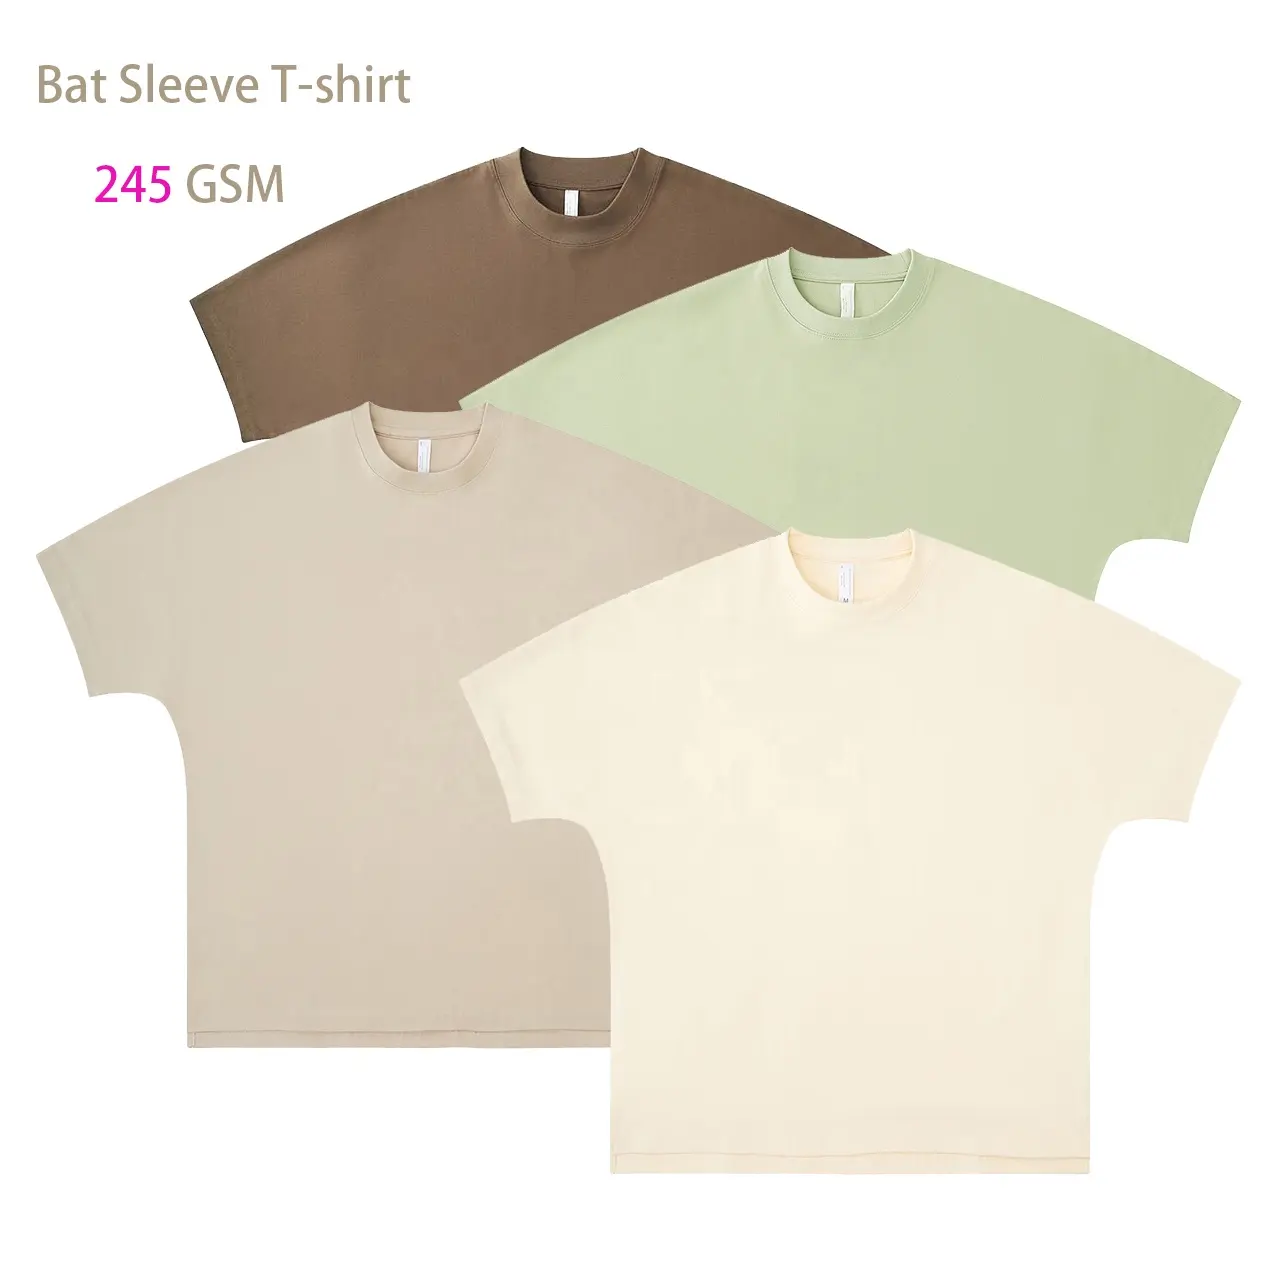 गुणवत्ता कस्टम बैट स्लीव कैज़ुअल टी-शर्ट 100% कॉटन पुरुषों की टी-शर्ट 245 जीएसएम शुद्ध कॉटन ब्लैंक फैशन टी-शर्ट आपका डिज़ाइन